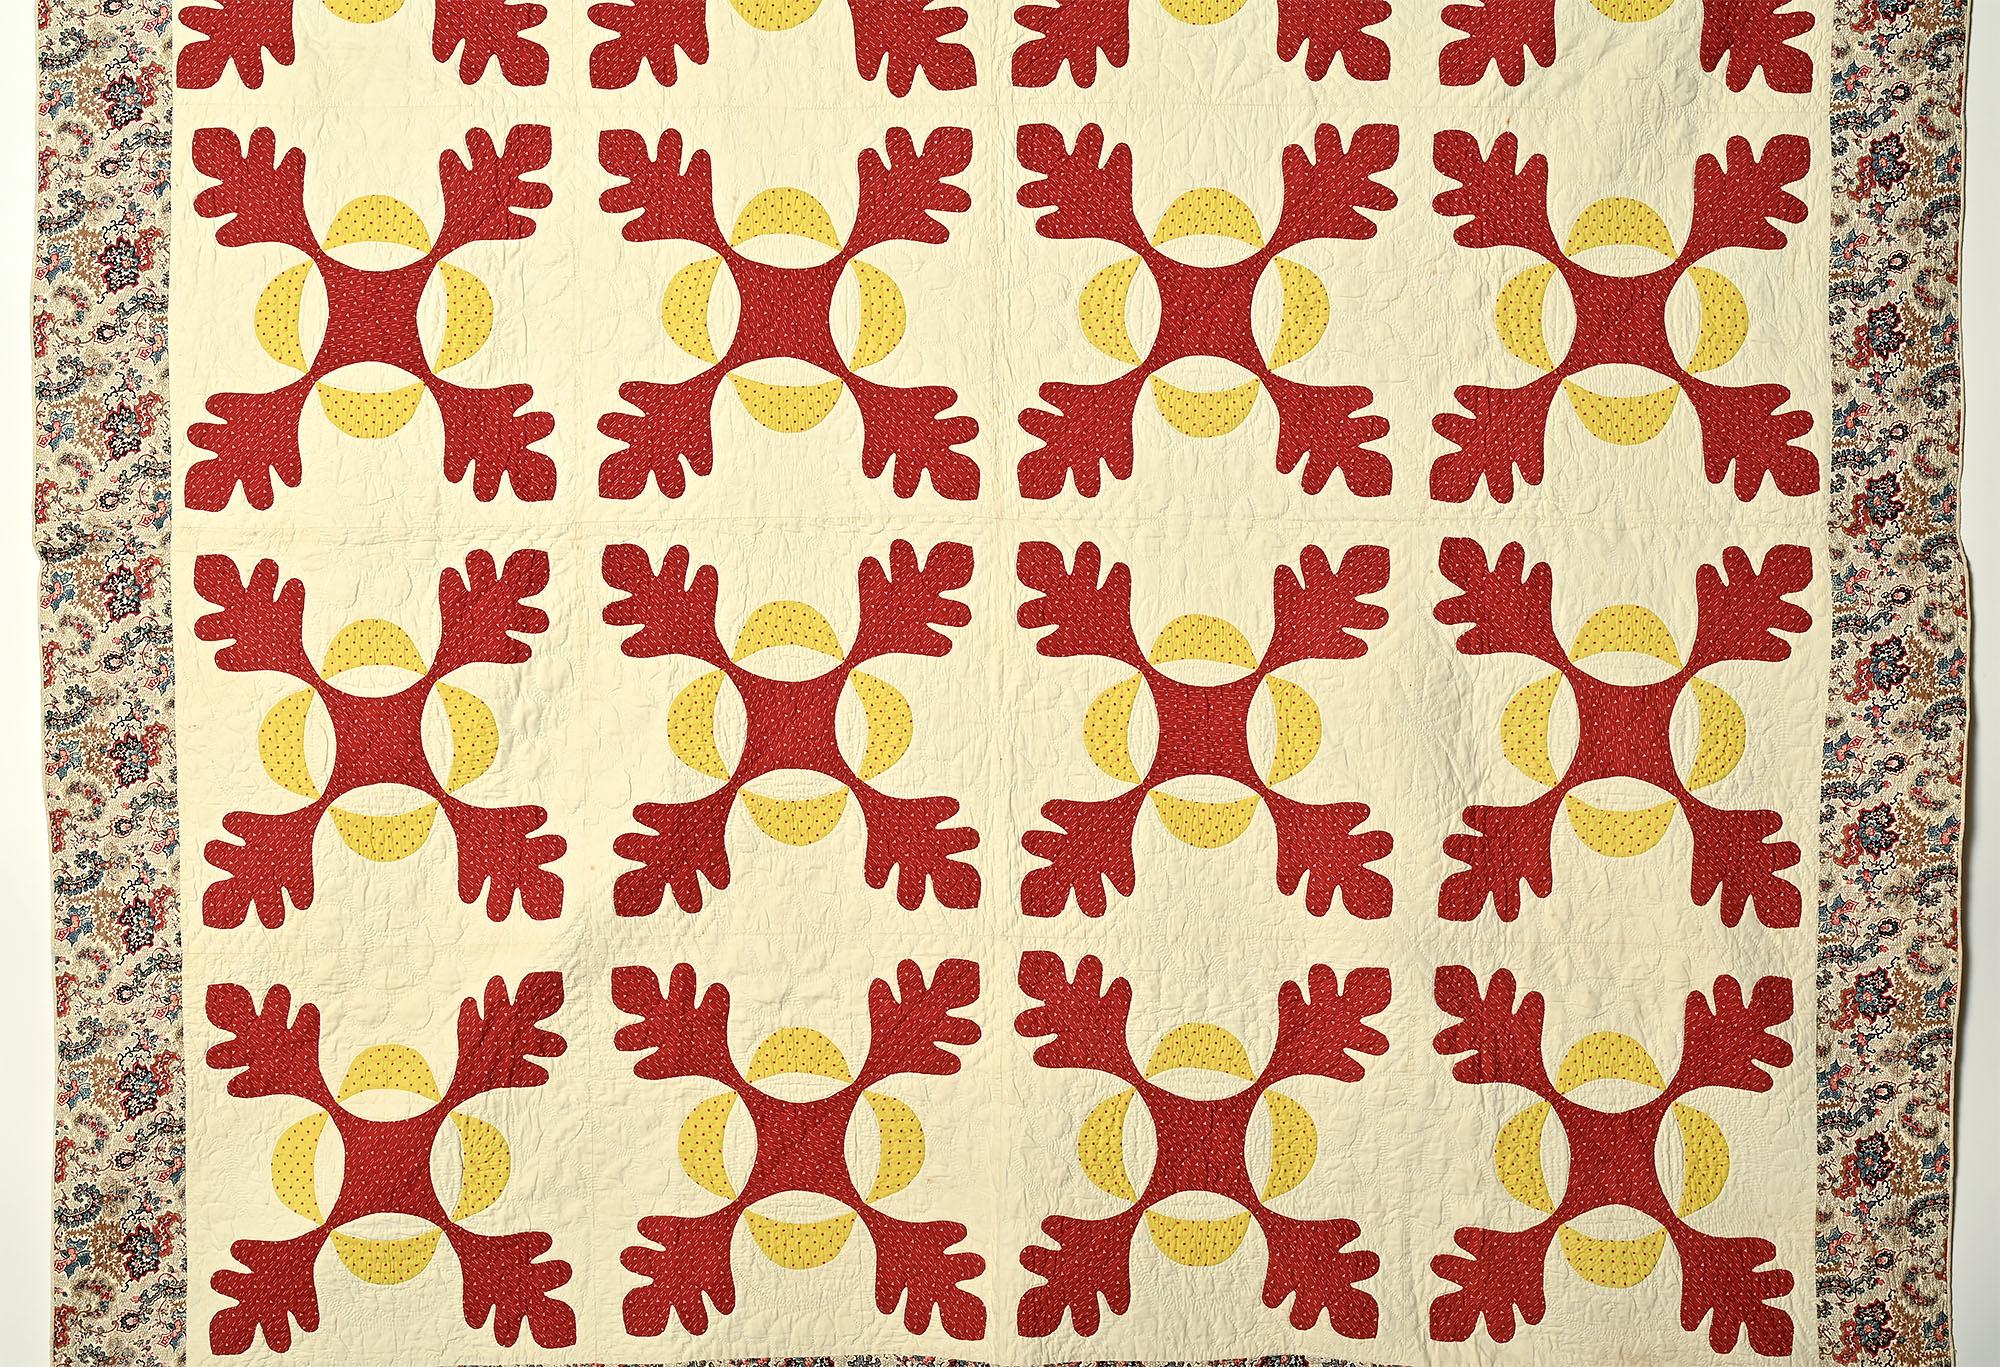 Dies ist eine wunderschön gearbeitete Version eines traditionellen Oakleaf-Patern-Quilts. Die Rost- (oder Ziegel-) Farbe scheint hervorzutreten, während das Gelb zurücktritt. Die Umrandung besteht aus einem Paisley- und Blumendruck, der sich perfekt